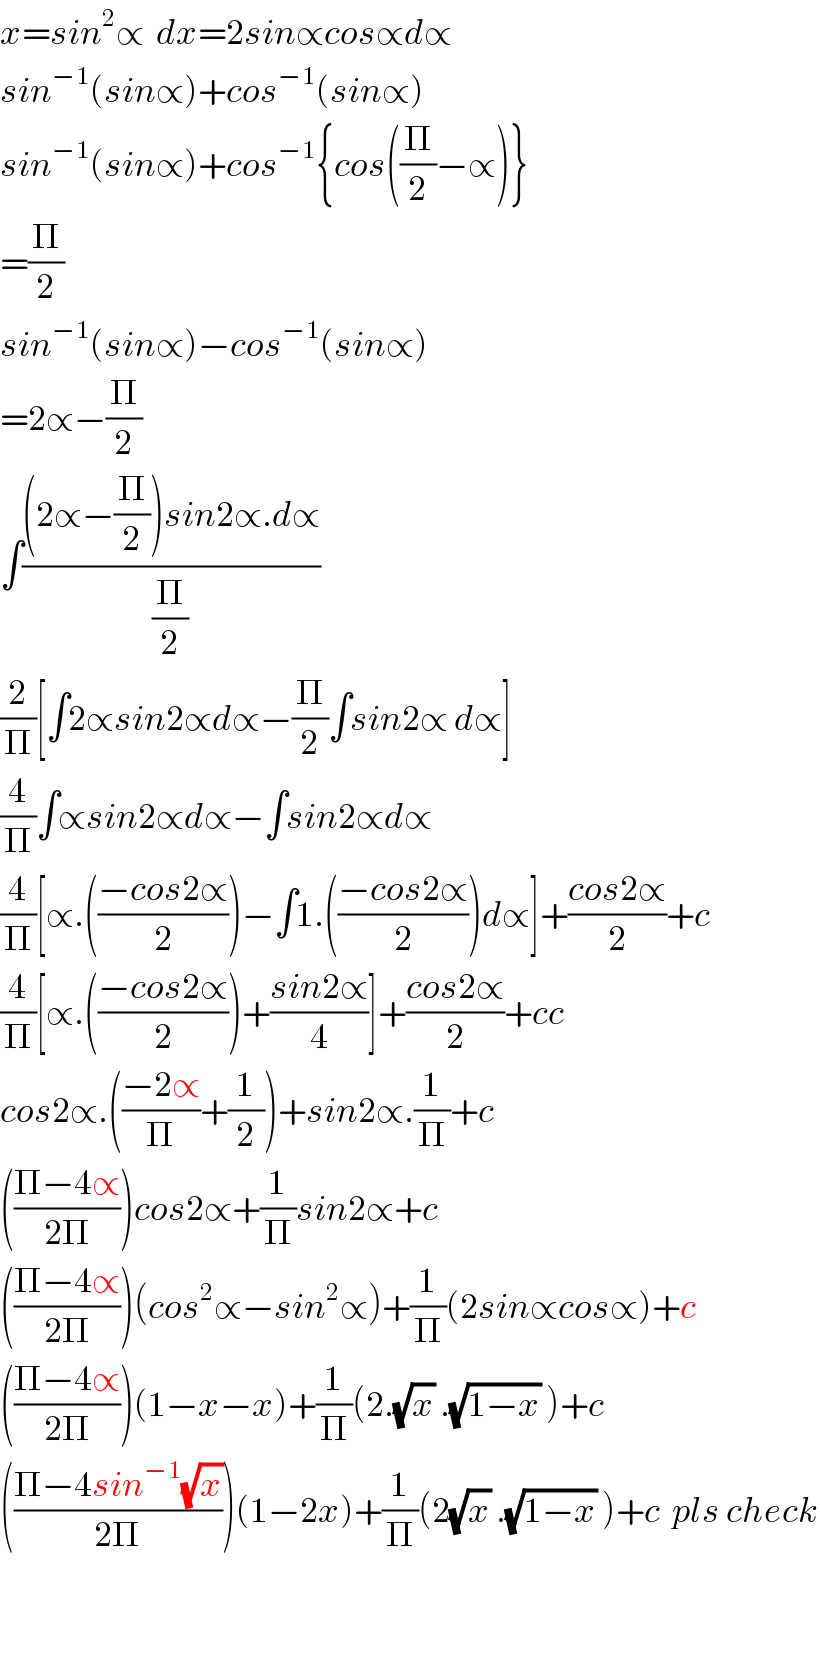 x=sin^2 ∝  dx=2sin∝cos∝d∝  sin^(−1) (sin∝)+cos^(−1) (sin∝)  sin^(−1) (sin∝)+cos^(−1) {cos((Π/2)−∝)}  =(Π/2)  sin^(−1) (sin∝)−cos^(−1) (sin∝)  =2∝−(Π/2)  ∫(((2∝−(Π/2))sin2∝.d∝)/(Π/2))  (2/Π)[∫2∝sin2∝d∝−(Π/2)∫sin2∝ d∝]  (4/Π)∫∝sin2∝d∝−∫sin2∝d∝  (4/Π)[∝.(((−cos2∝)/2))−∫1.(((−cos2∝)/2))d∝]+((cos2∝)/2)+c  (4/Π)[∝.(((−cos2∝)/2))+((sin2∝)/4)]+((cos2∝)/2)+cc  cos2∝.(((−2∝)/Π)+(1/2))+sin2∝.(1/Π)+c  (((Π−4∝)/(2Π)))cos2∝+(1/Π)sin2∝+c  (((Π−4∝)/(2Π)))(cos^2 ∝−sin^2 ∝)+(1/Π)(2sin∝cos∝)+c  (((Π−4∝)/(2Π)))(1−x−x)+(1/Π)(2.(√x) .(√(1−x)) )+c  (((Π−4sin^(−1) (√x))/(2Π)))(1−2x)+(1/Π)(2(√x) .(√(1−x)) )+c  pls check    